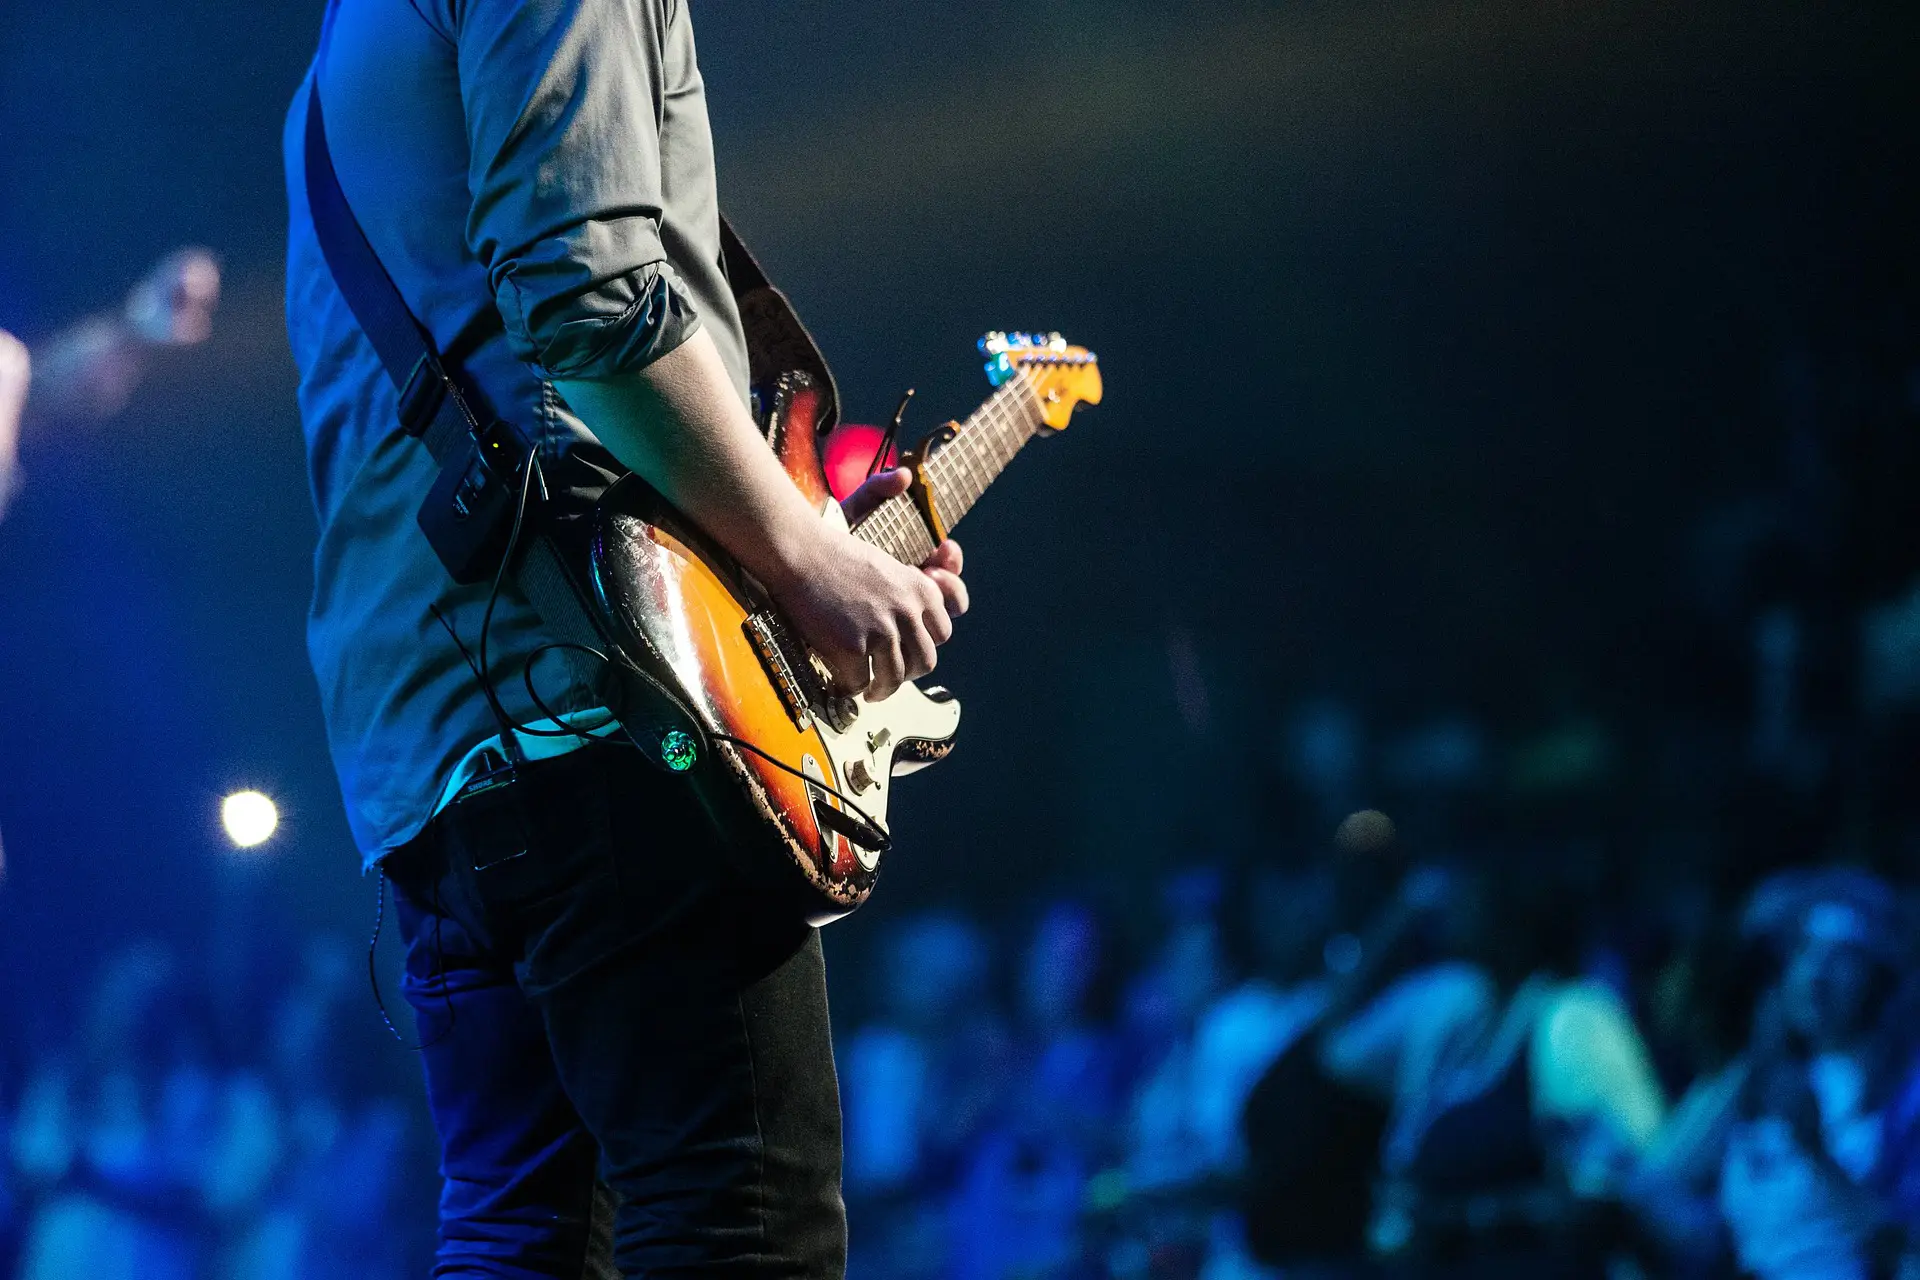 Nell'immagine si vede una persona che sta suonando una chitarra davanti al pubblico.